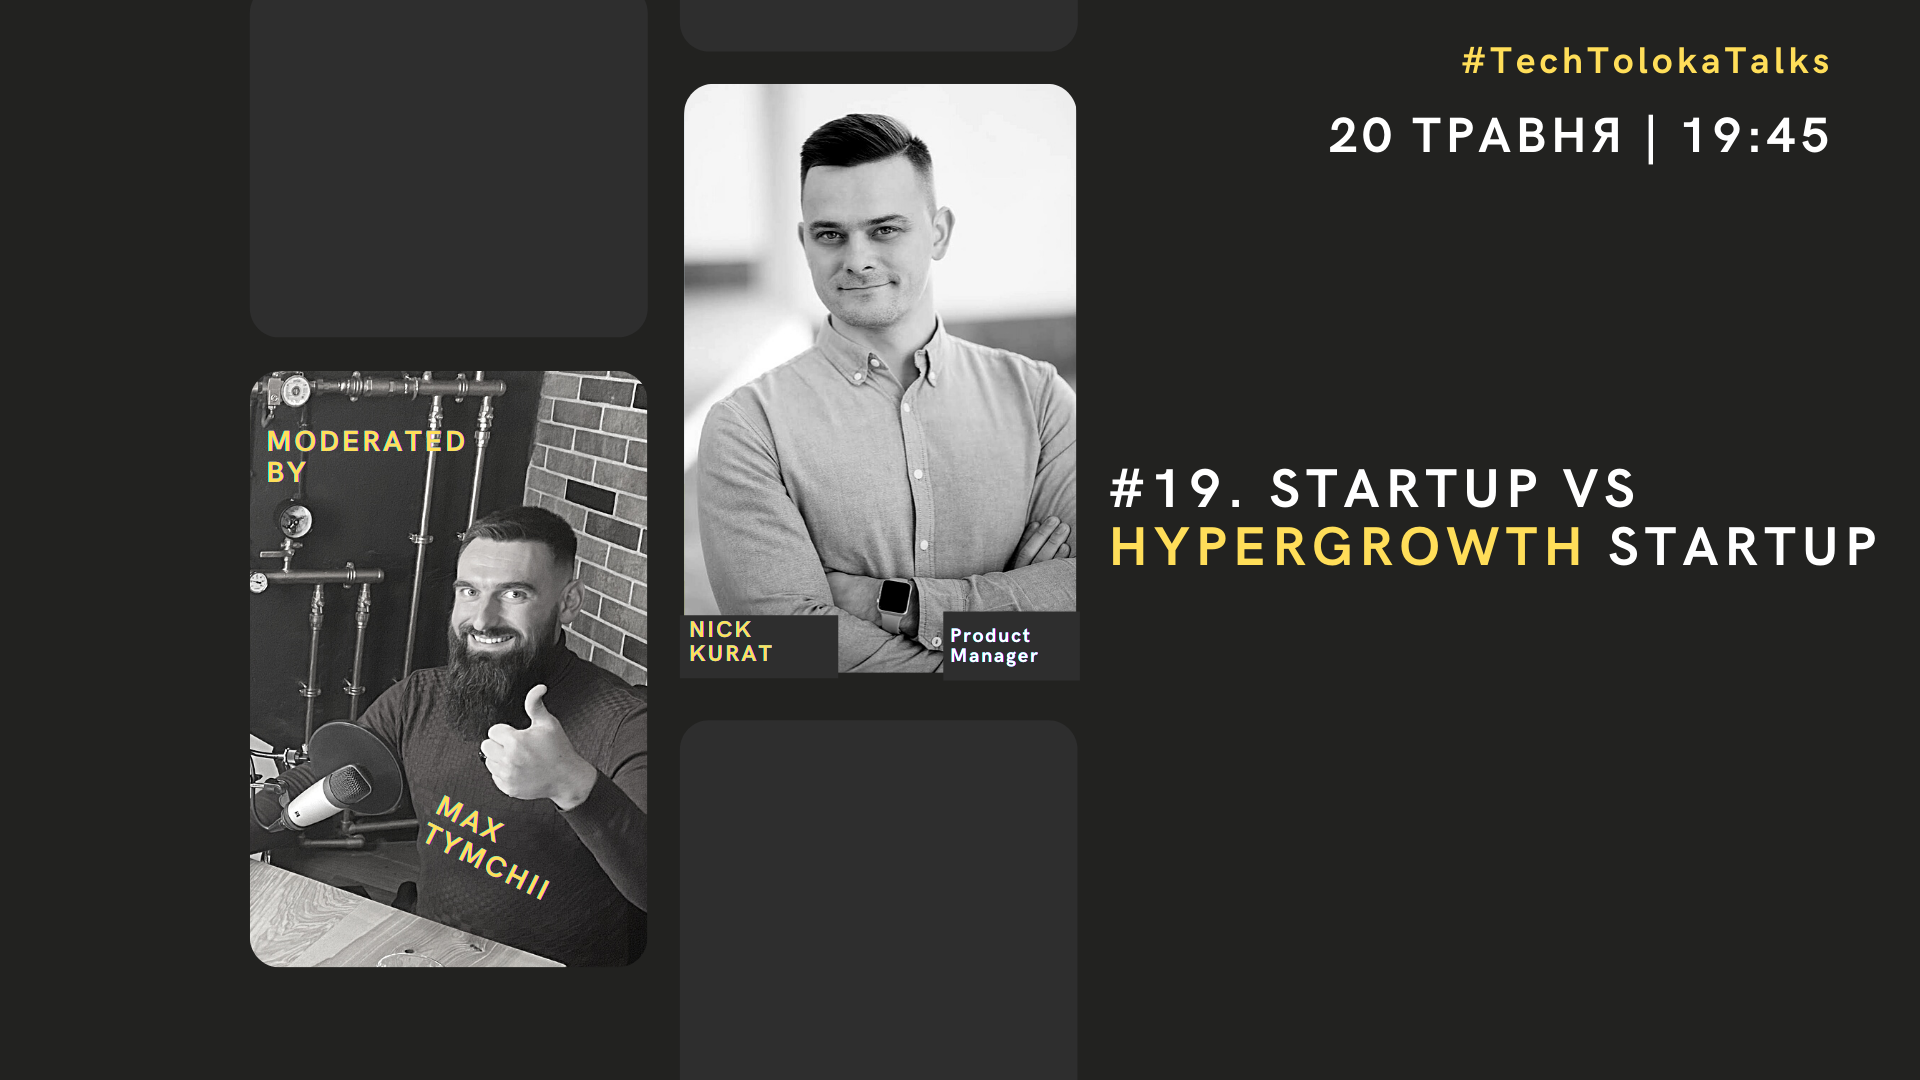 TechTolokaTalks #19. Startup vs Hypergrowth Startup